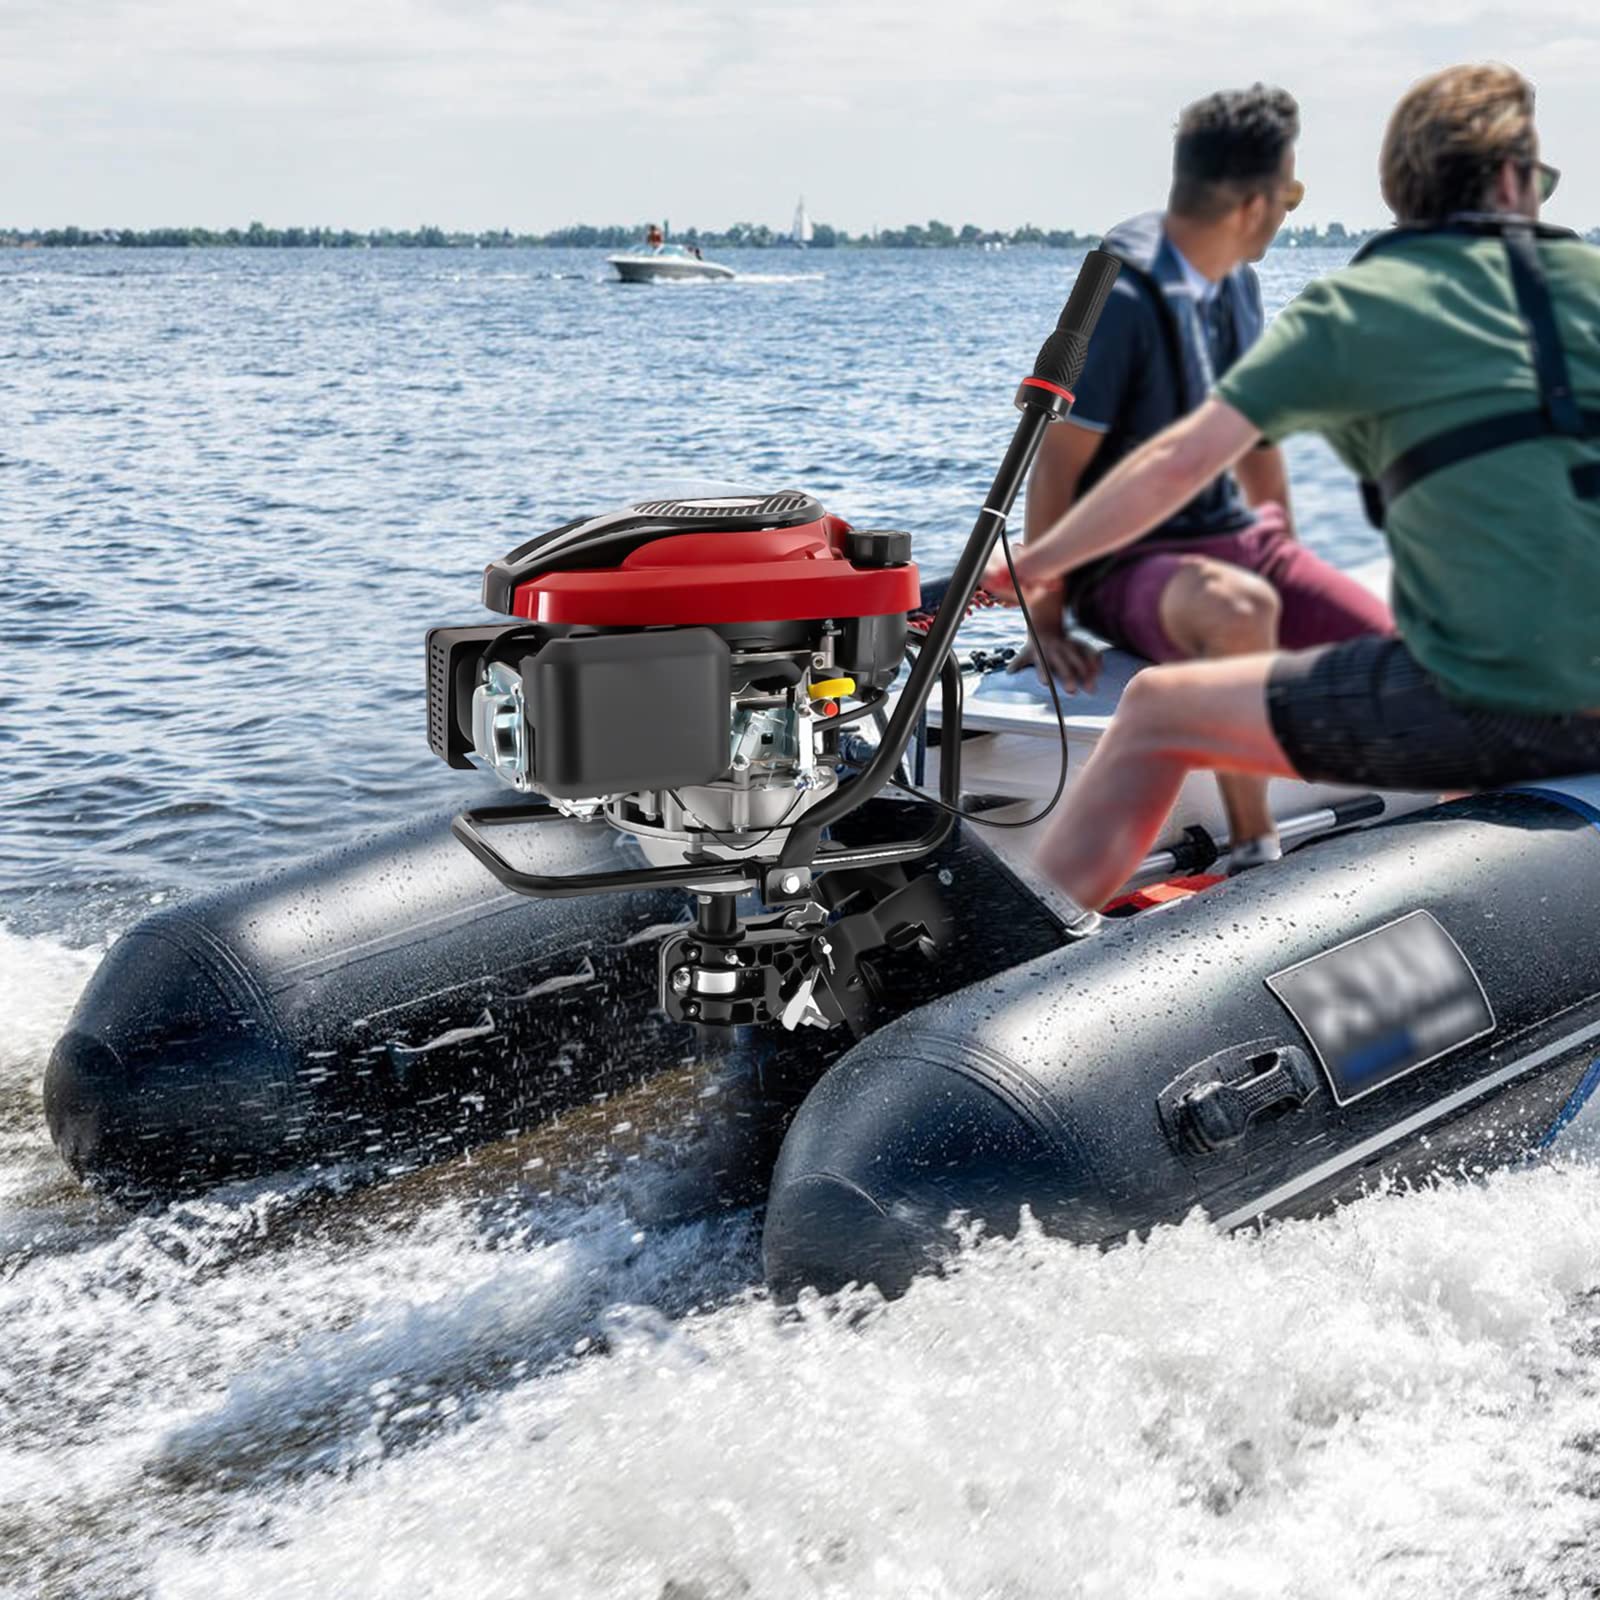 4-Takt-Außenbordmotor Benzin Bootsmotor 8 PS Luftgekühlt TCI Außenborder Luftkühlung Elektromotor Benzinmotor Bootsmotor für Schlauchboote, Fischerboote von WSIKGHU